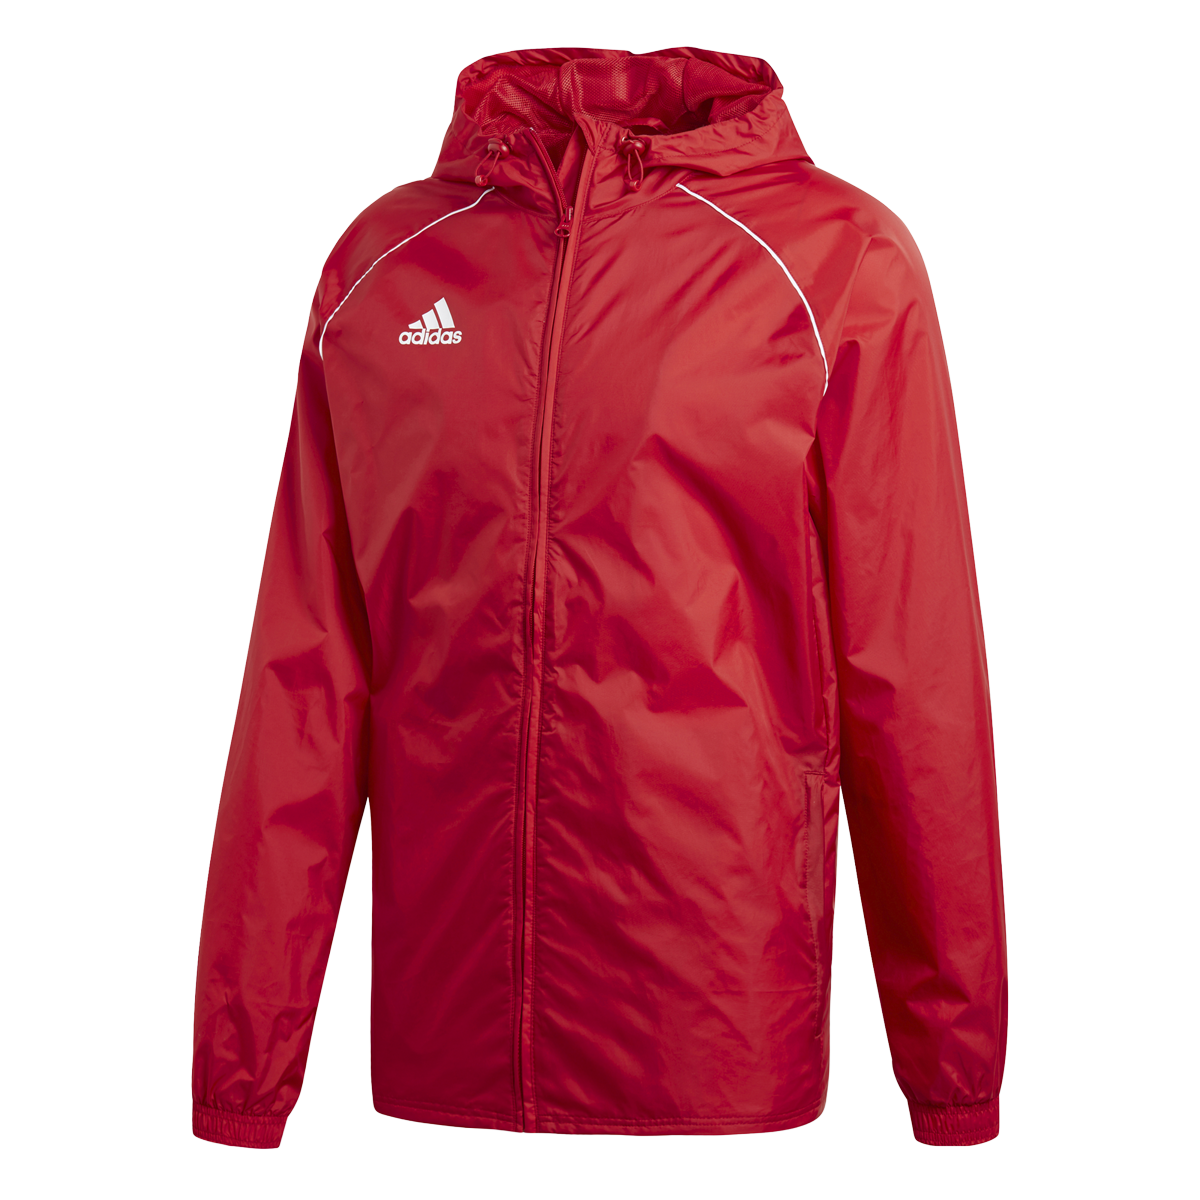 Adidas Core 18 Rain Jacket červená UK XL Pánské